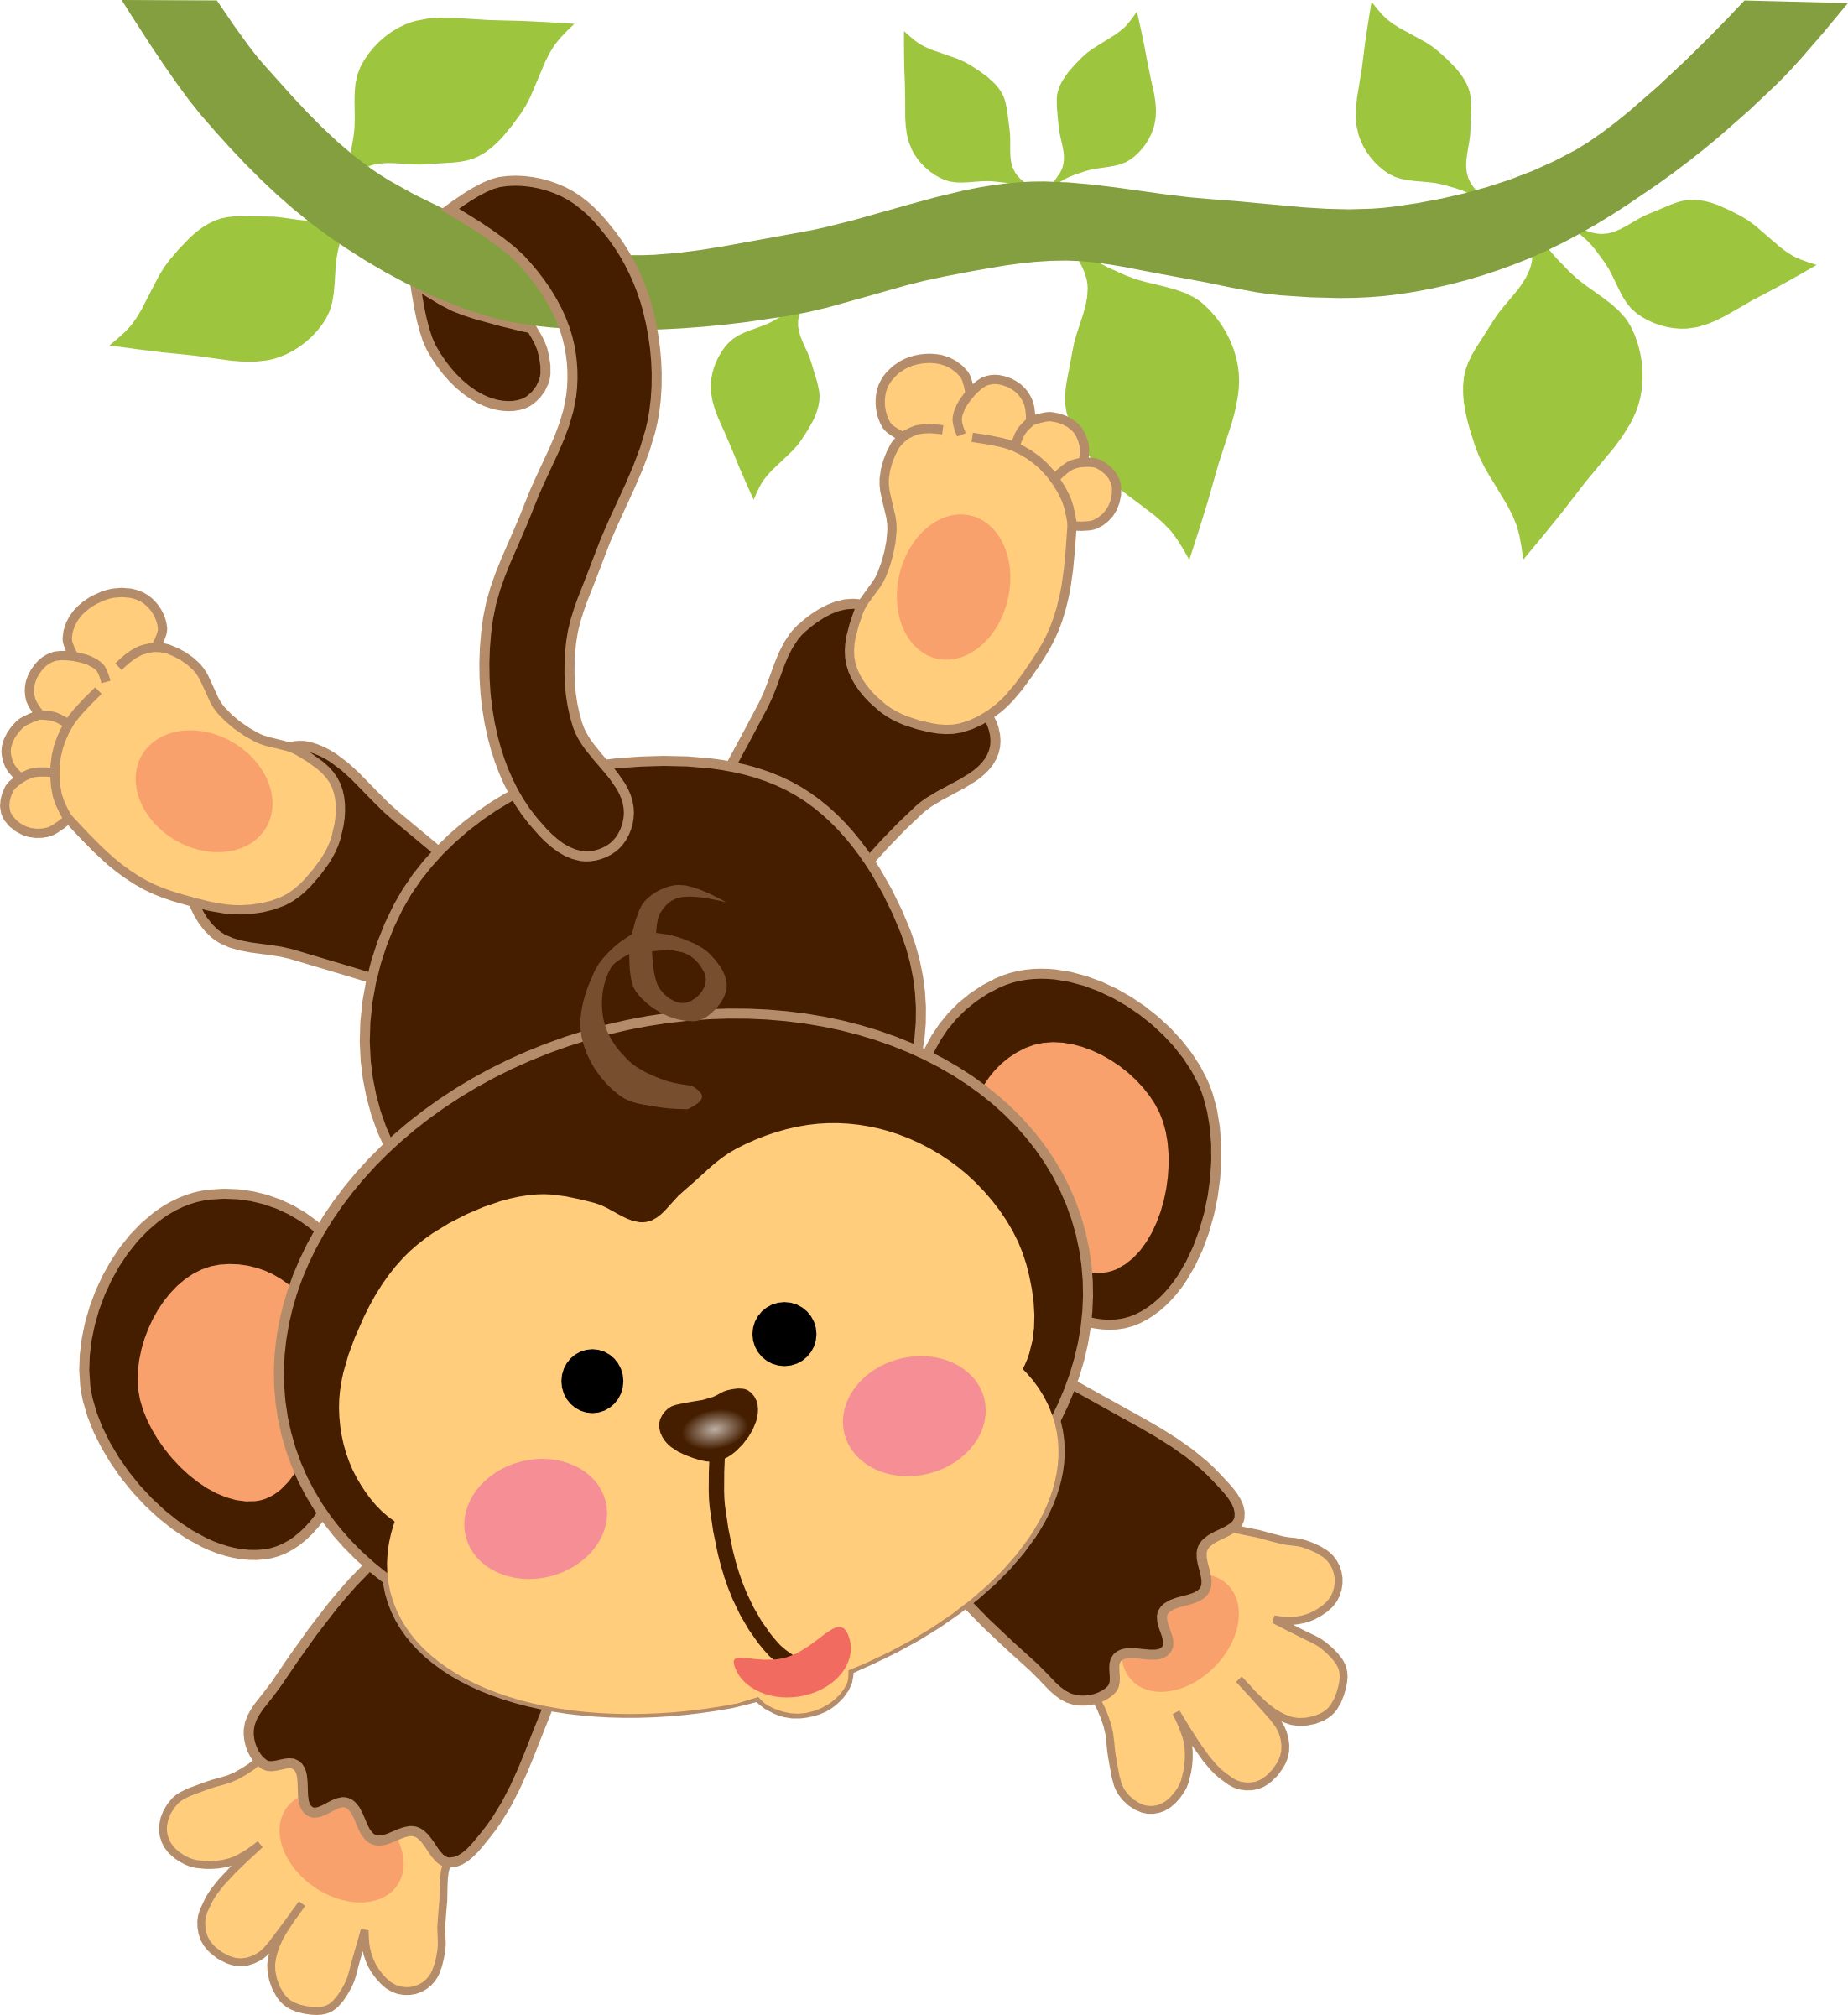 Infant cartoon monkey.